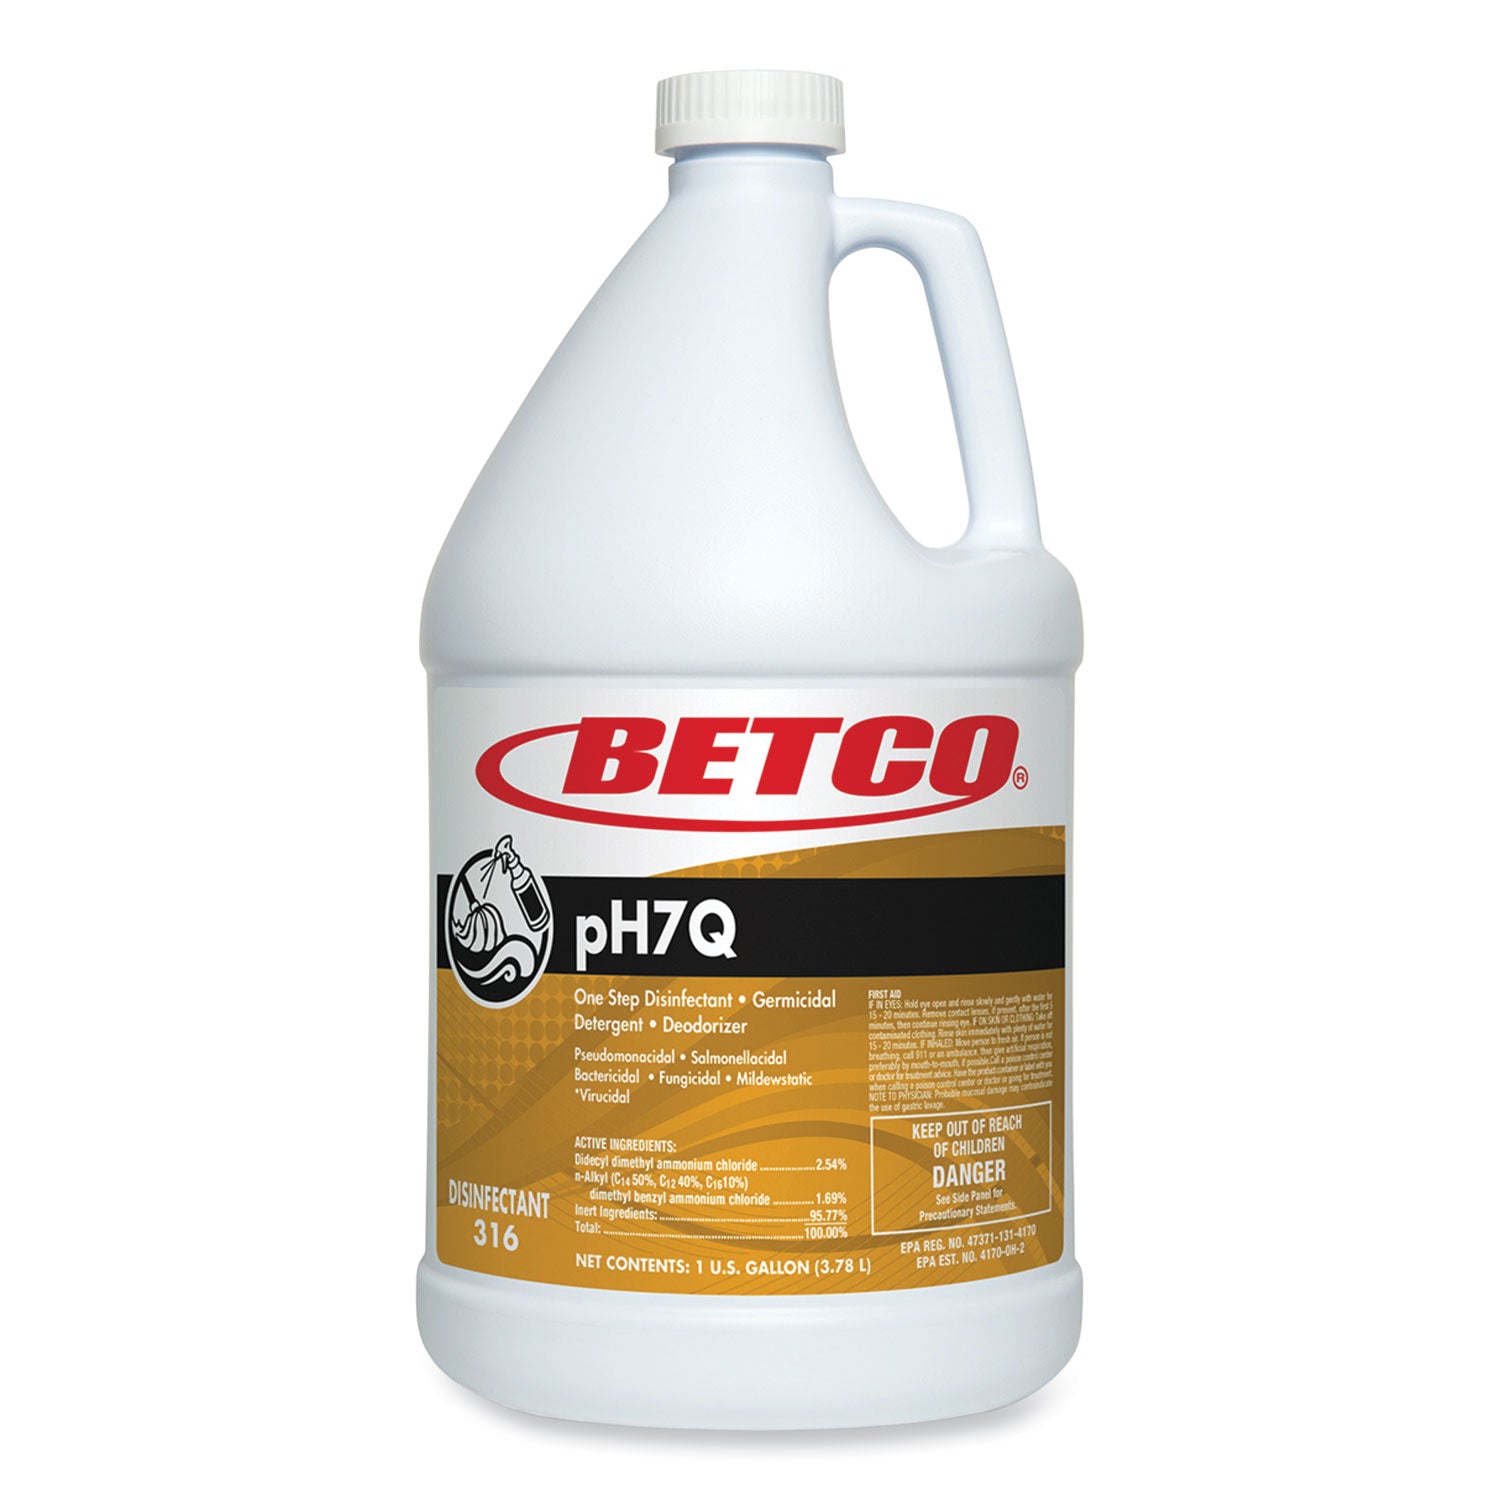 ph7q-dual-neutral-disinfectant-cleaner-lemon-scent-1-gal-bottle-4-carton_bet3160400 - 1